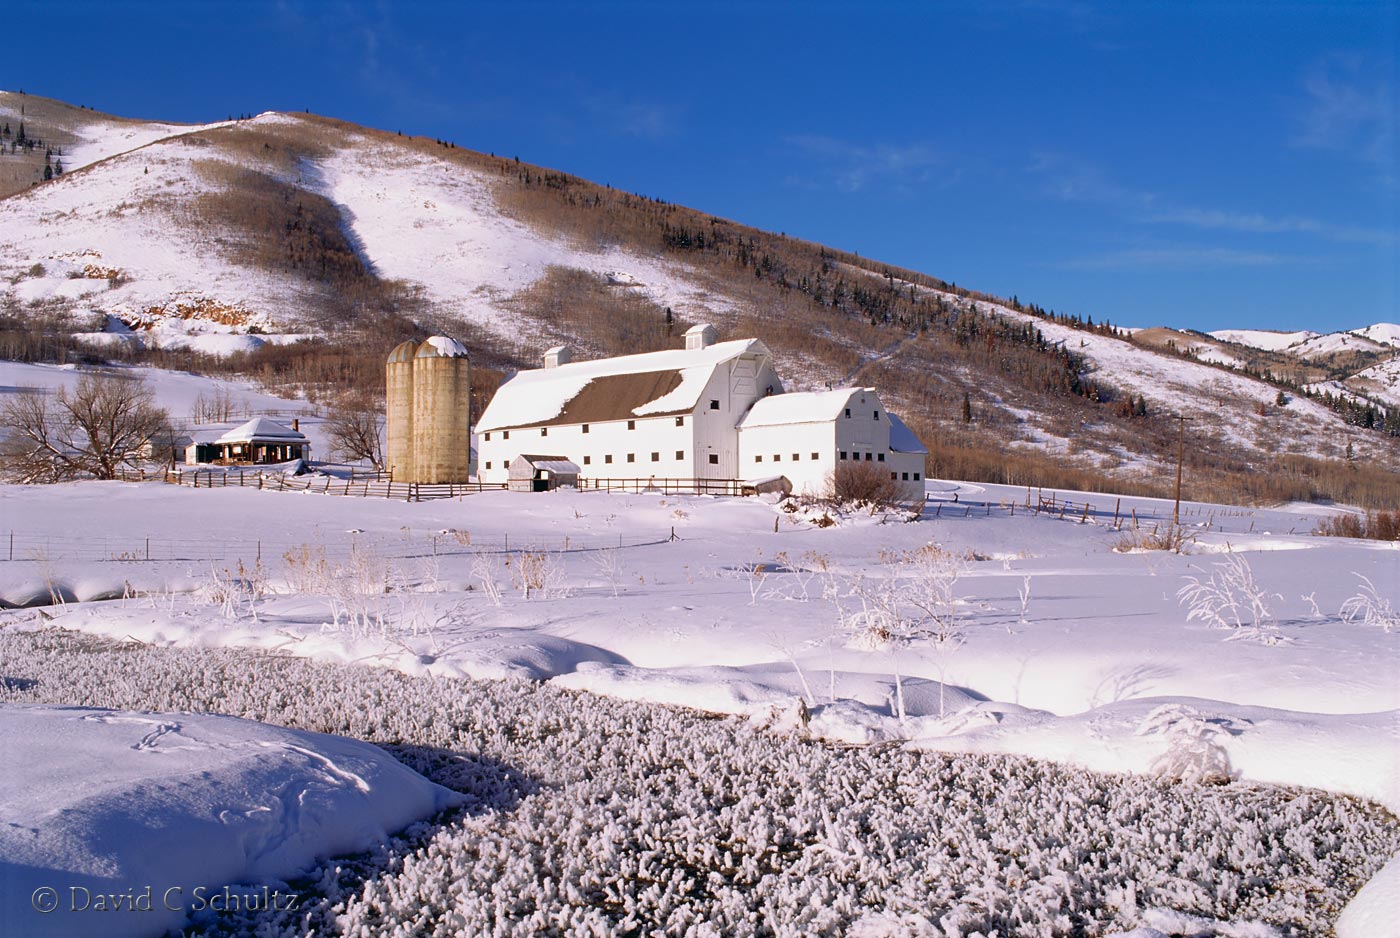 The McPolin barn in Park City, Utah - Image-#13-831